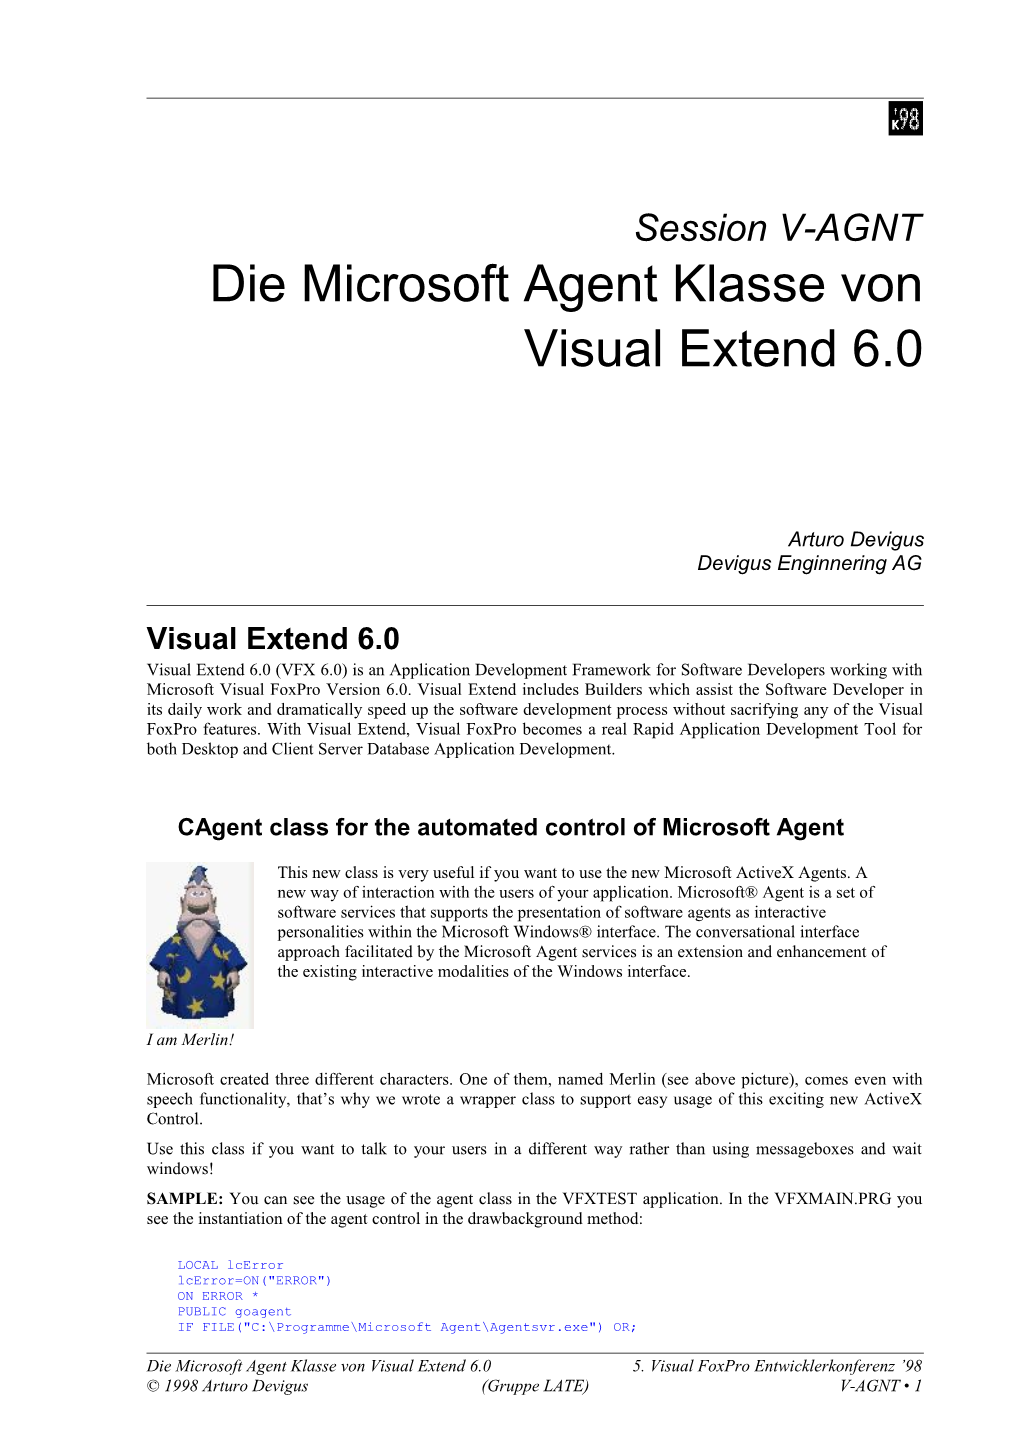 Die Microsoft Agent Klasse Von Visual Extend 6.0